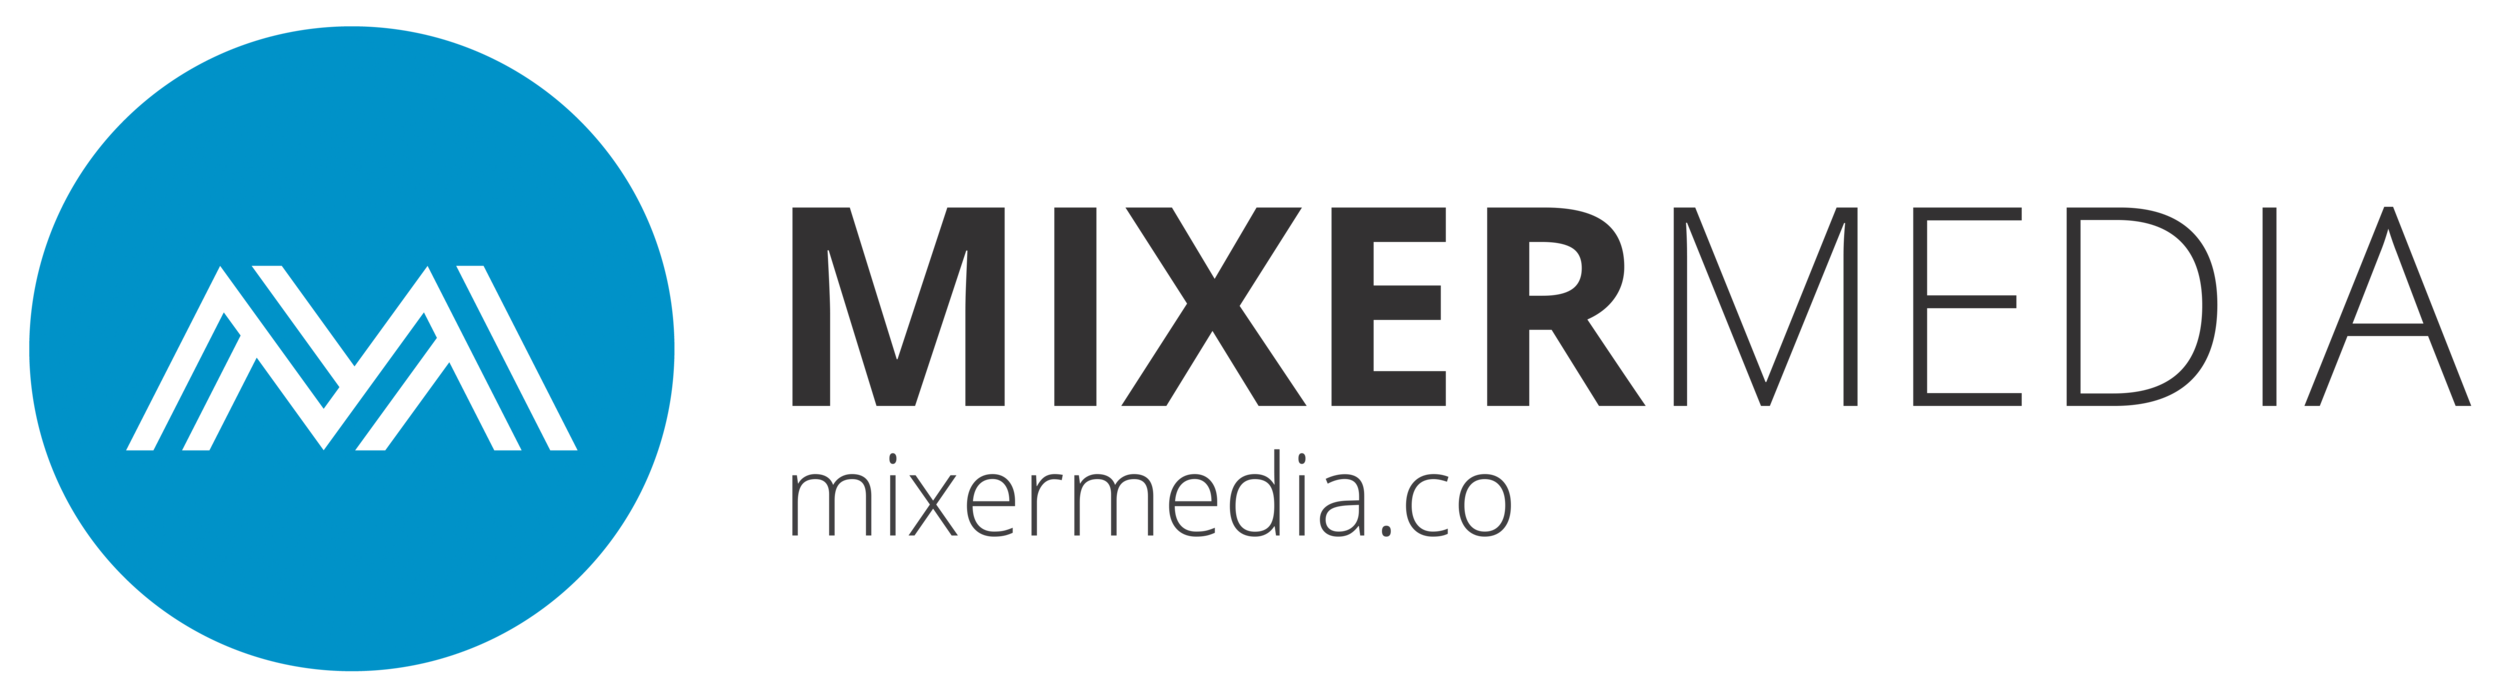 MixerMedia_long_v1_rgb.png